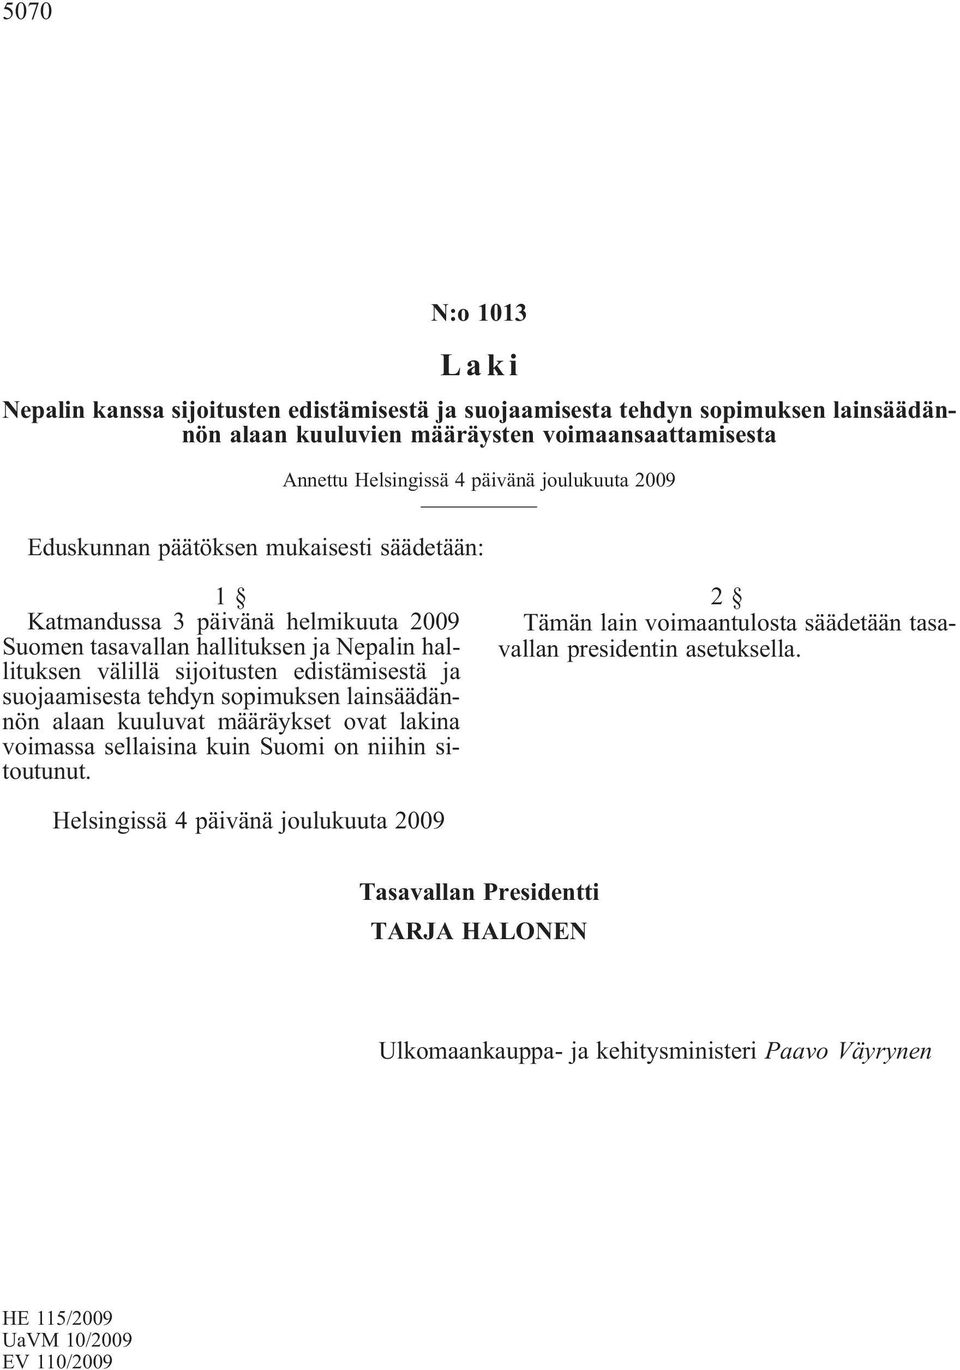 ja suojaamisesta tehdyn sopimuksen lainsäädännön alaan kuuluvat määräykset ovat lakina voimassa sellaisina kuin Suomi on niihin sitoutunut.